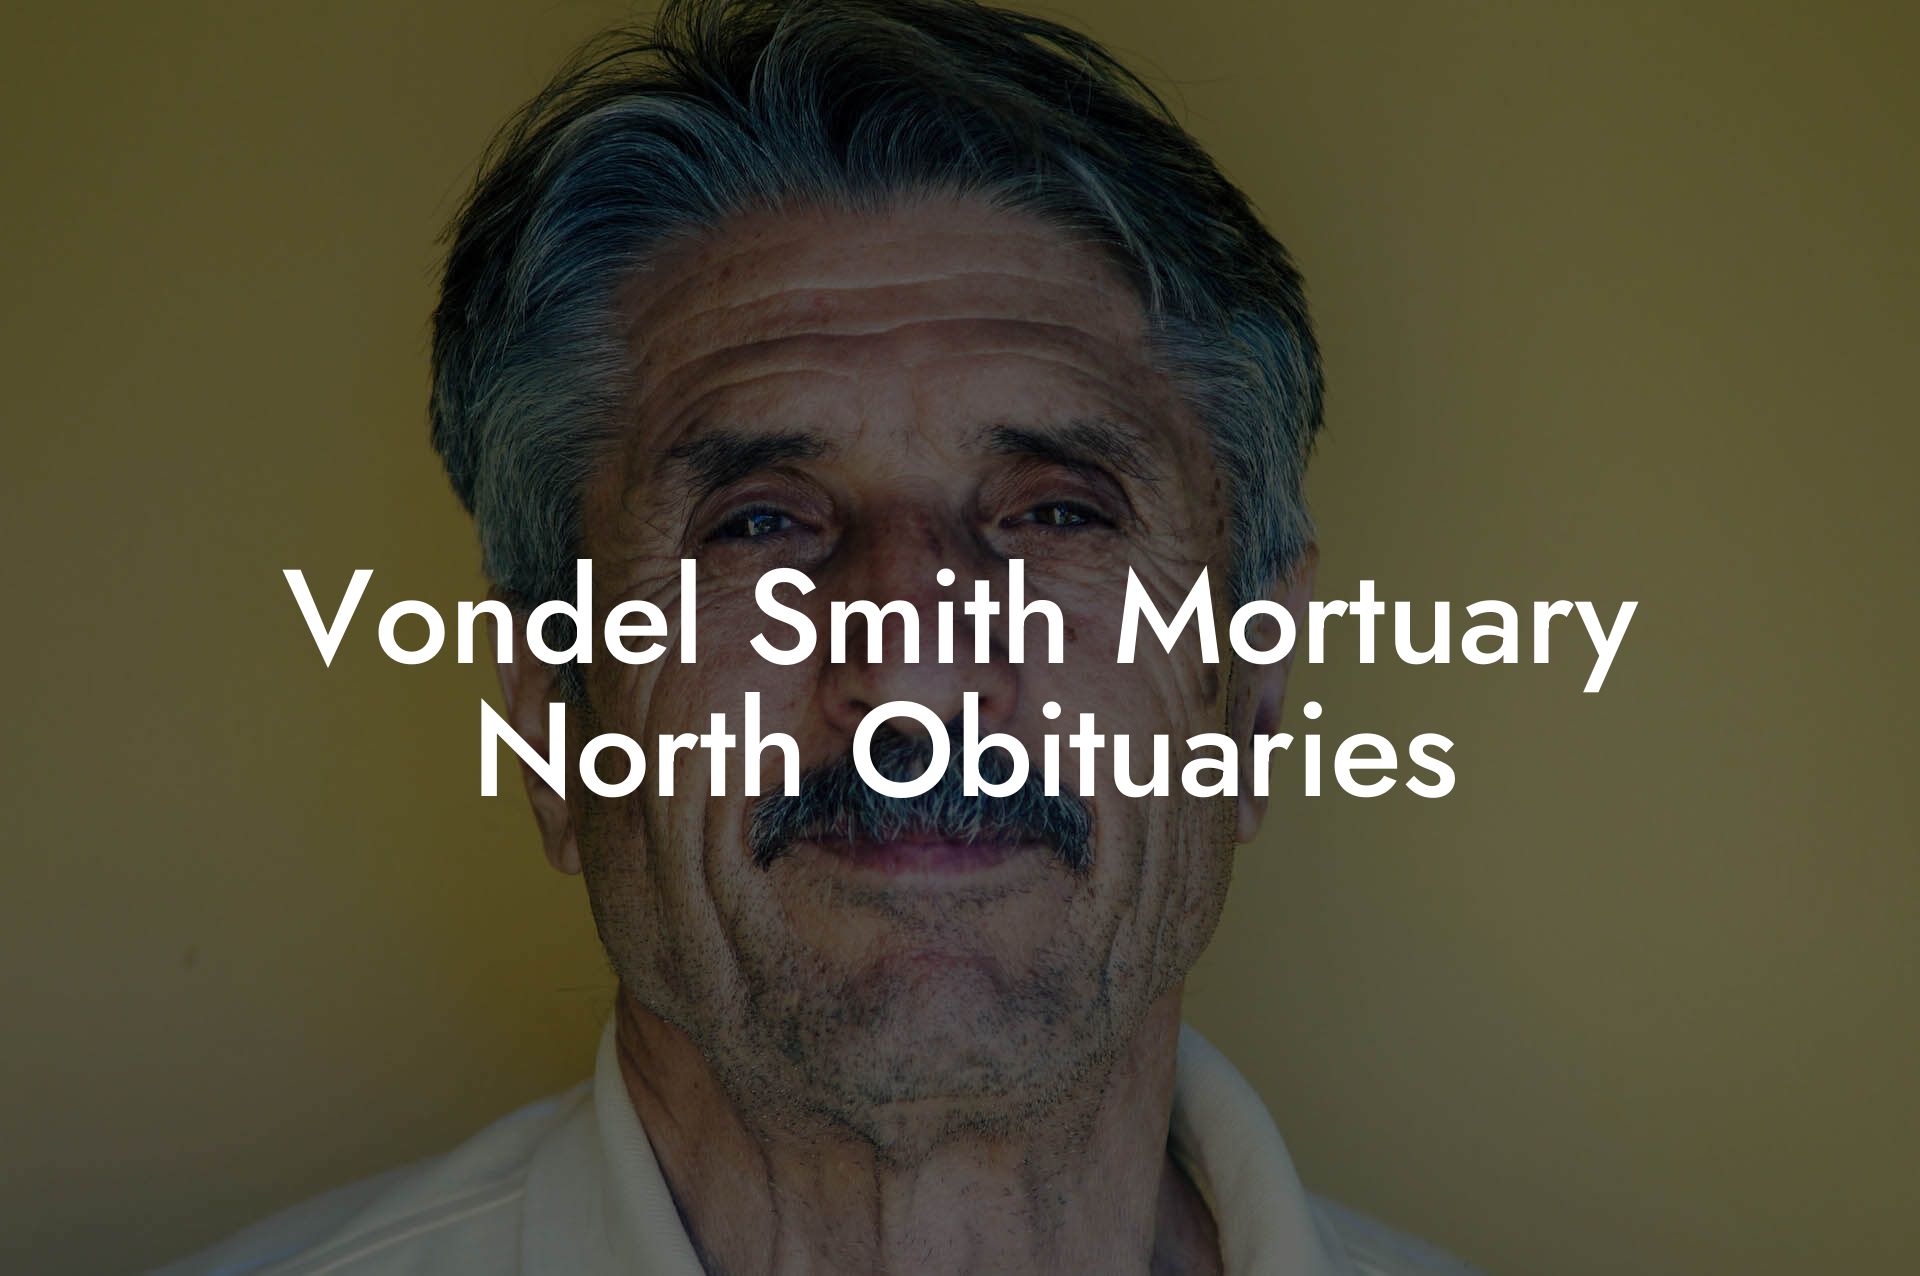 Vondel Smith Mortuary North Obituaries